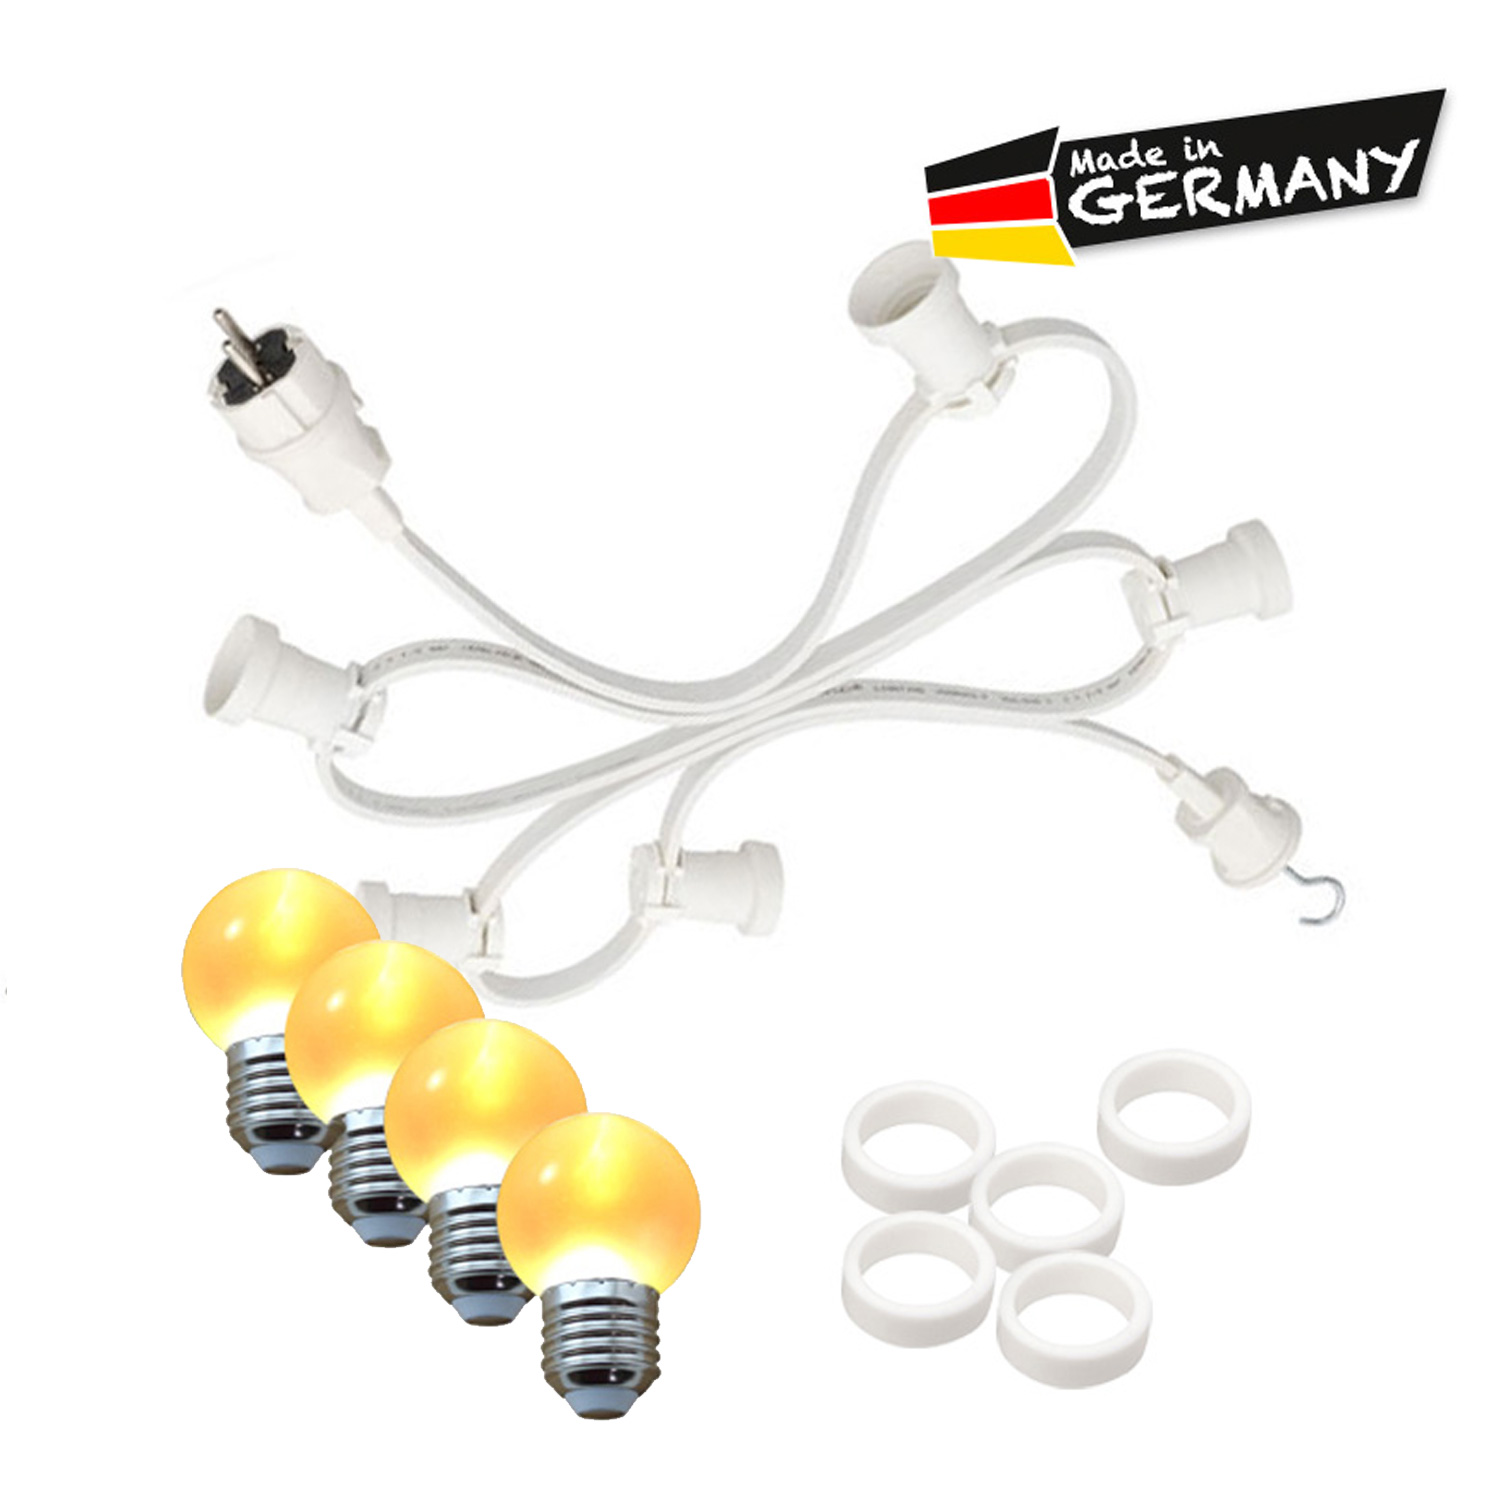 Illu-/Partylichterkette 10m - Außenlichterkette - Made in Germany - 20 x ultra-warmweiße LED Kugeln